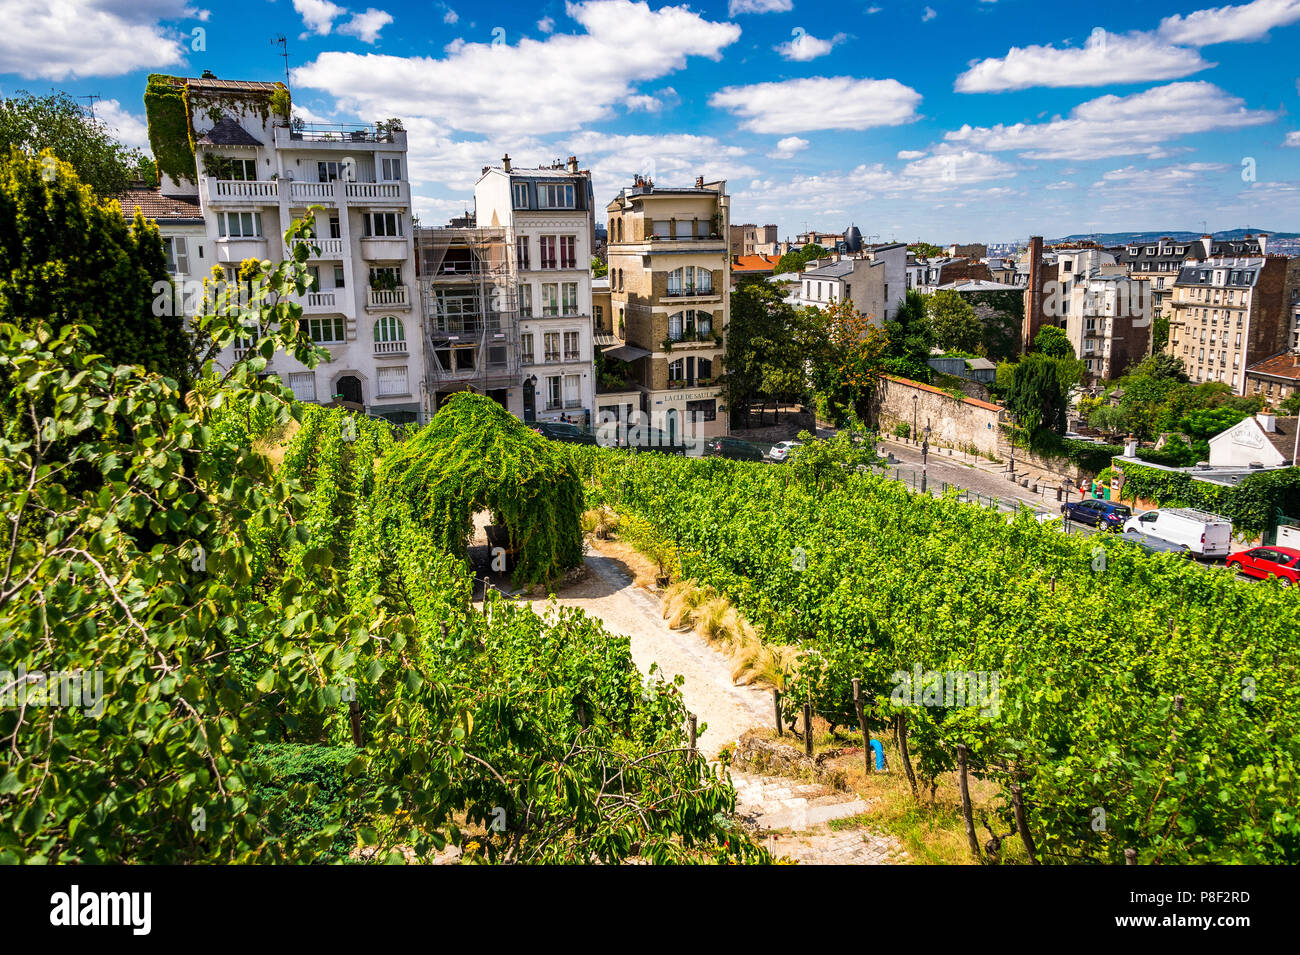 Clos Montmartre also known as Vigne de Montmartre. La Vigne de Montmartre is the oldest vineyard in Paris. Stock Photo